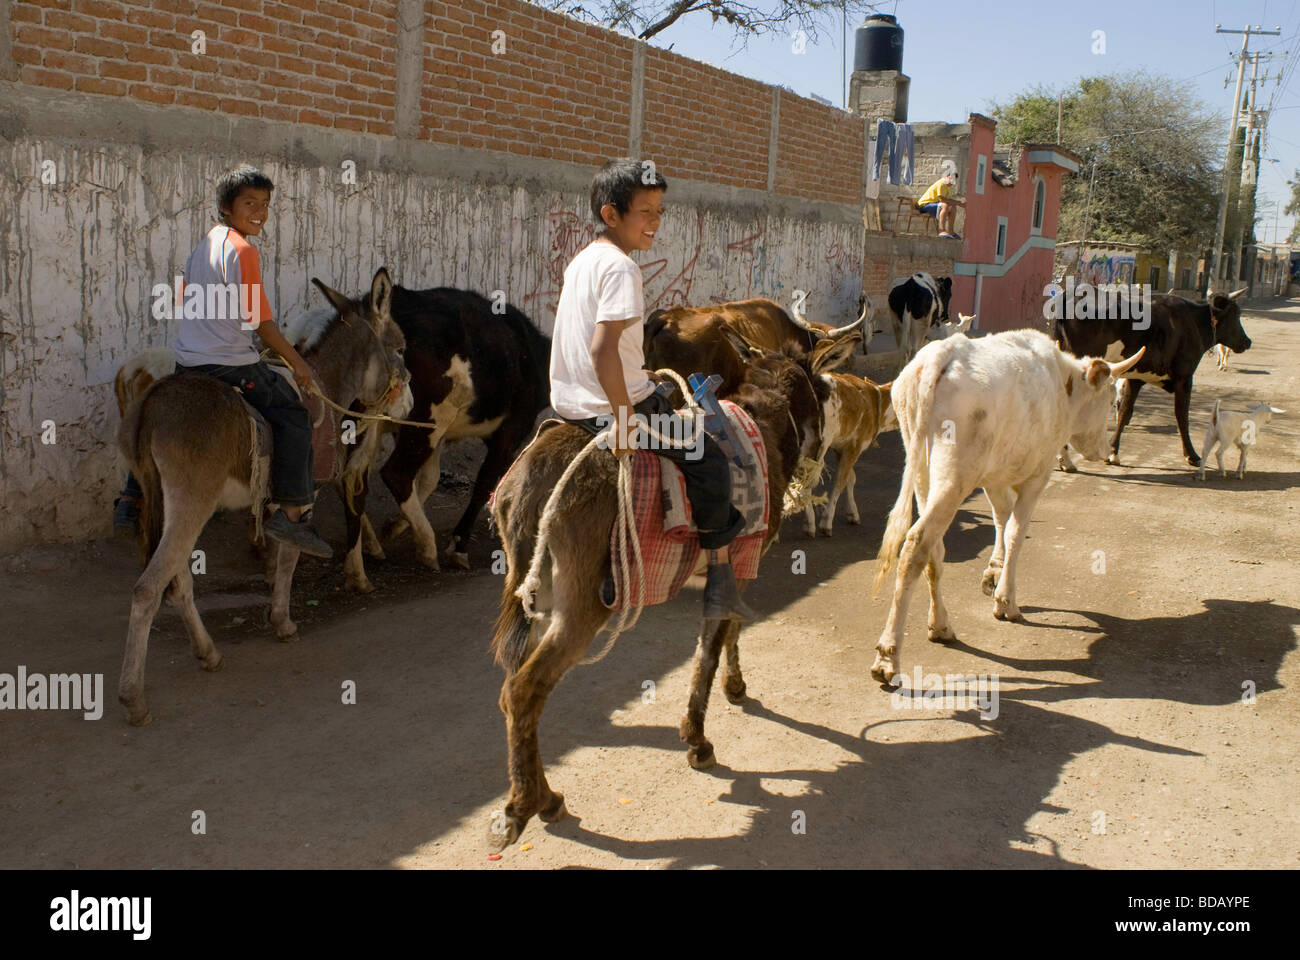 Les jeunes garçons sur les ânes bovins d'entraînement sur la rue principale de la ville de Los Rodriguez, Guanajuato, Mexique Banque D'Images